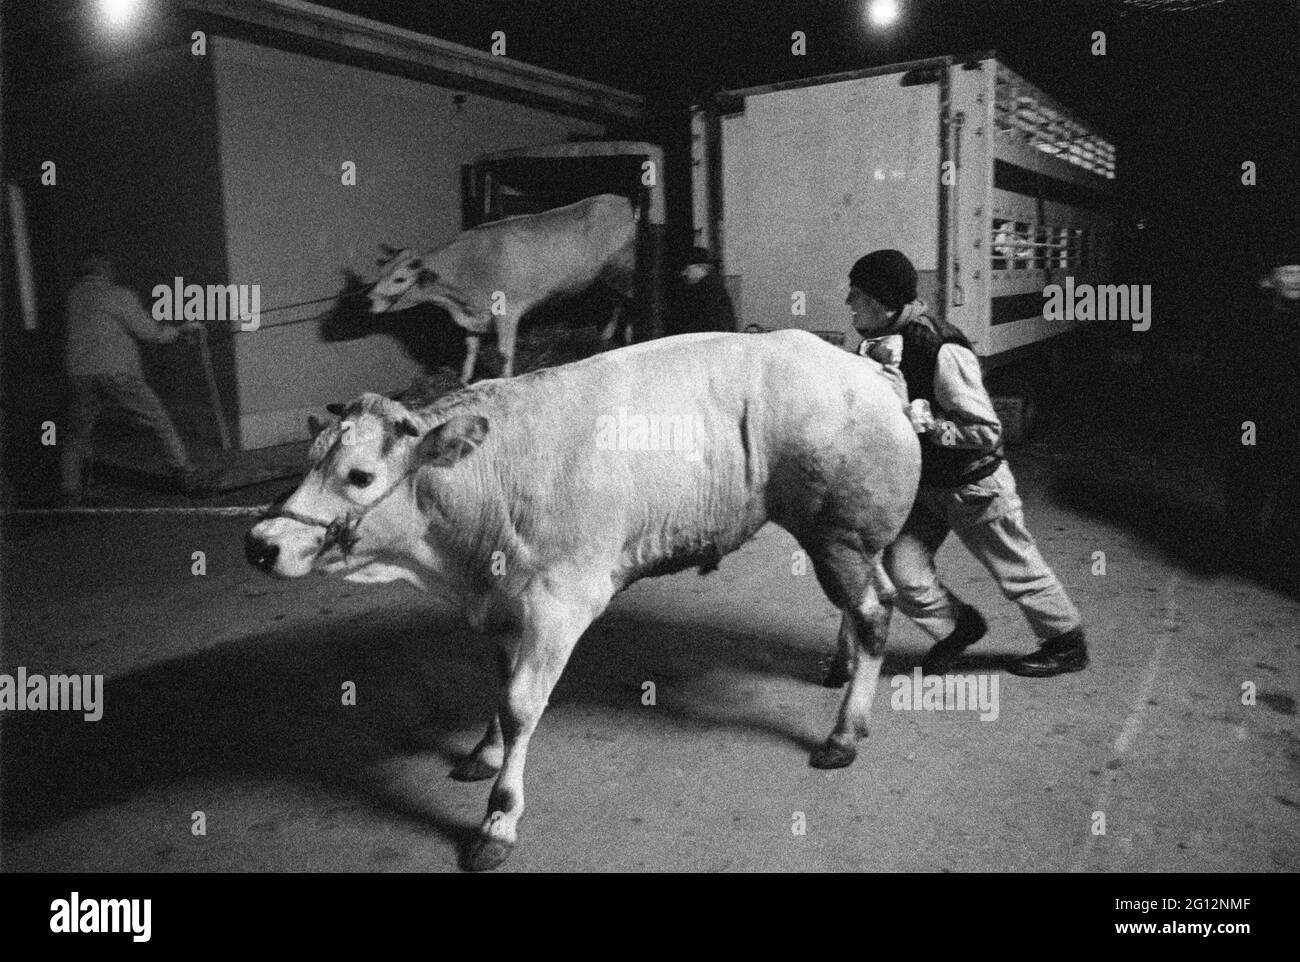 Fête traditionnelle de 'Bue Grasso' (FAT ox) à Carrù (Cuneo, Piémont, Italie), foire de race 'blanc piémontais', l'un des plus anciens animaux d'Italie Banque D'Images